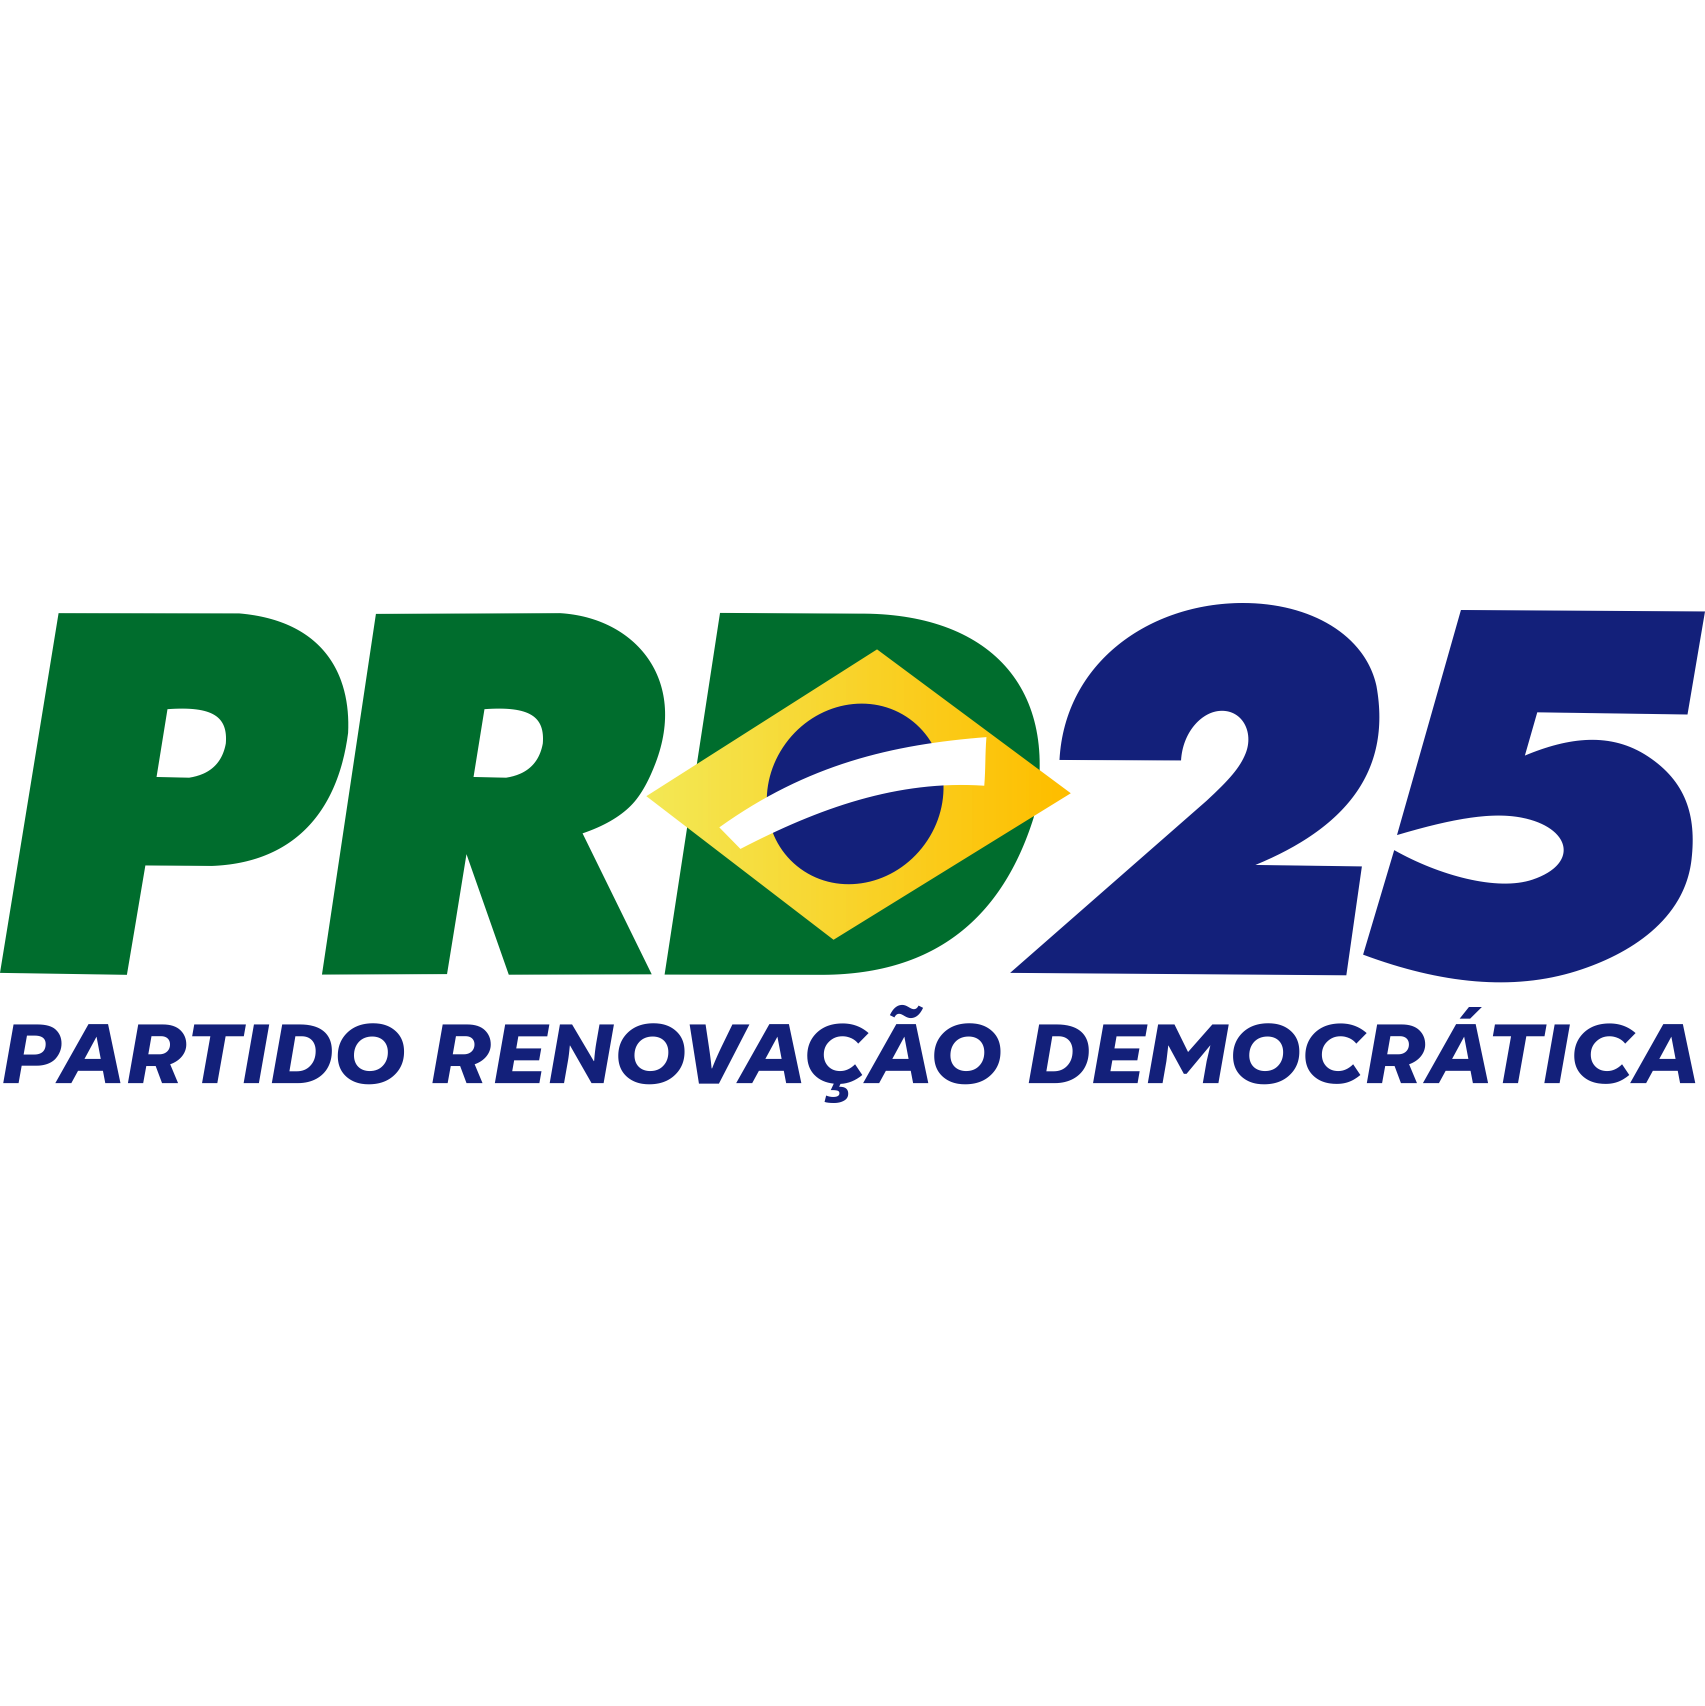 PRD - Partido Renovação Democrática